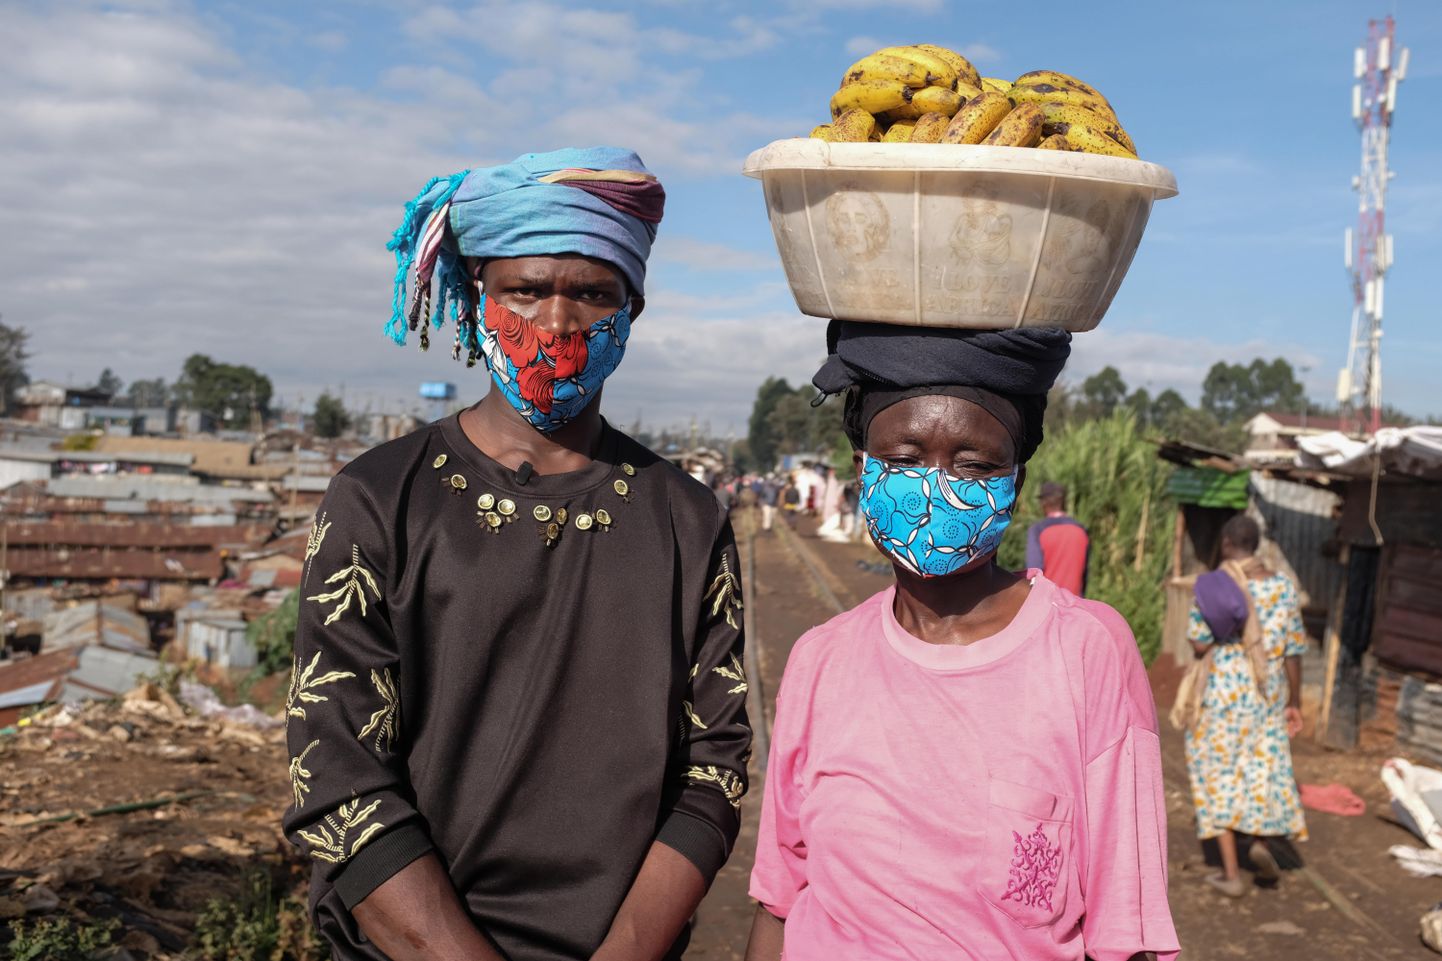 Keenia naised kannavad koroonaviiruse ohu tõttu isetehtud maske.